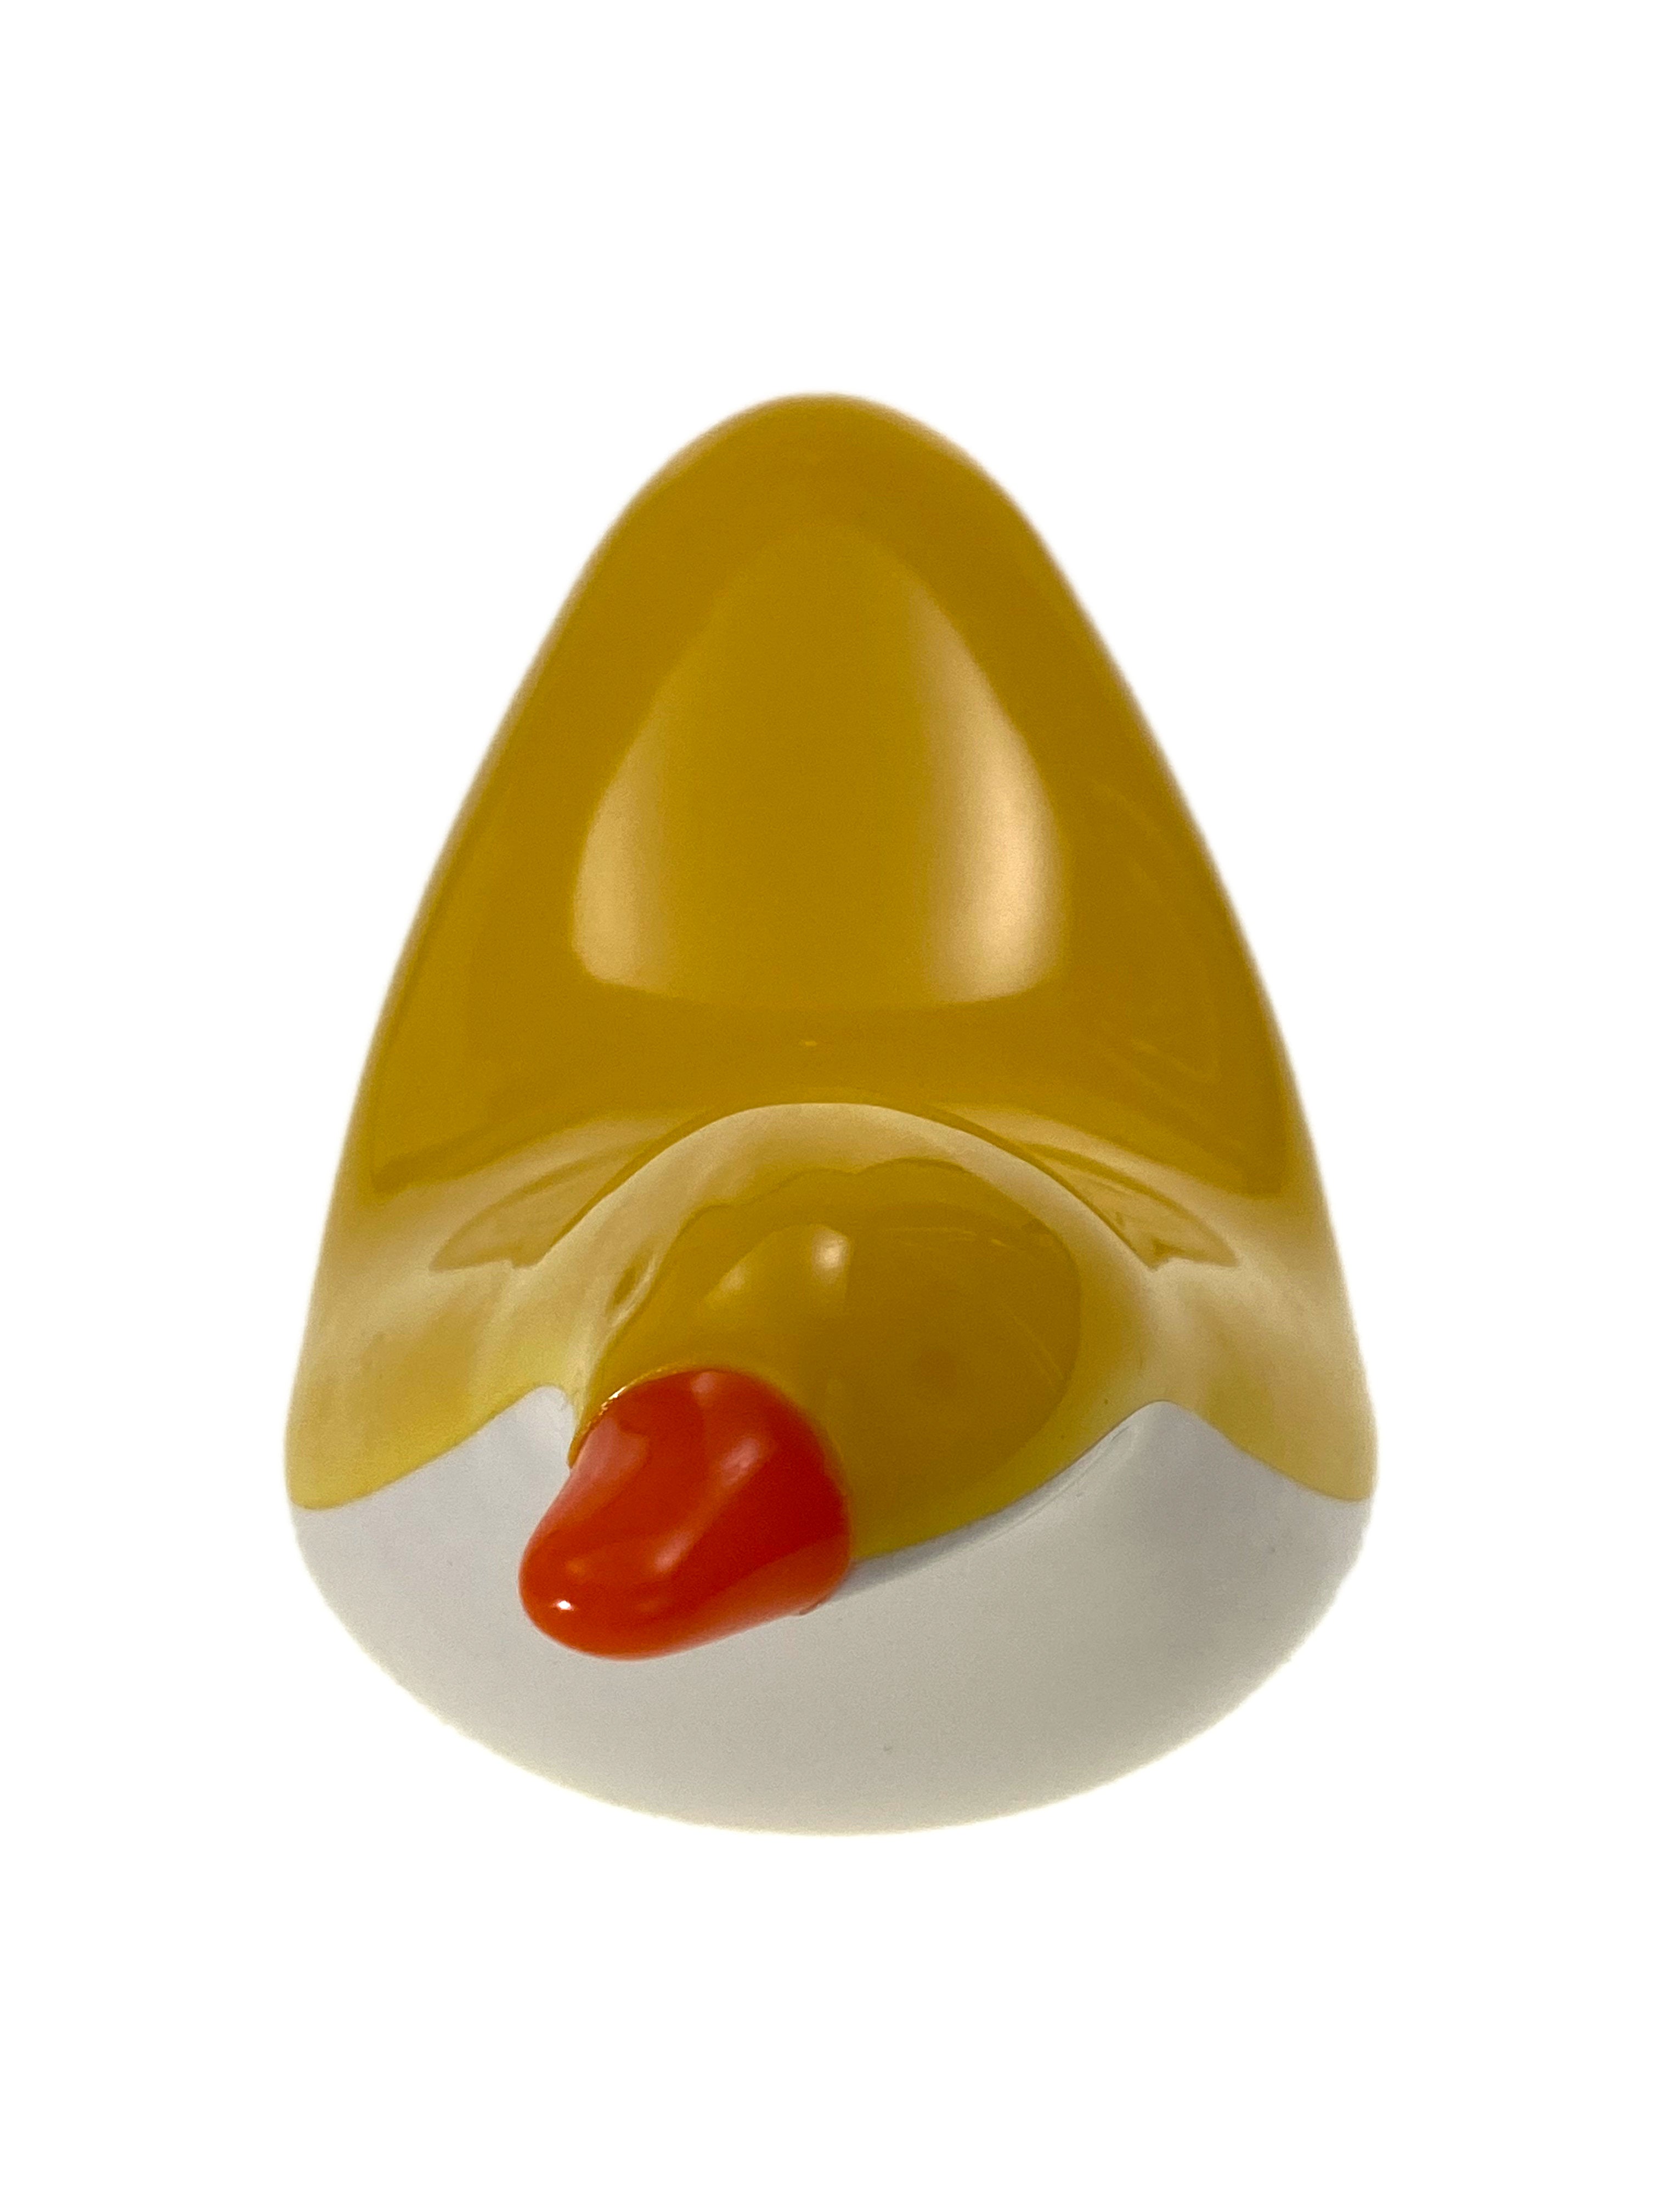 Floating Duck Bath Toy    